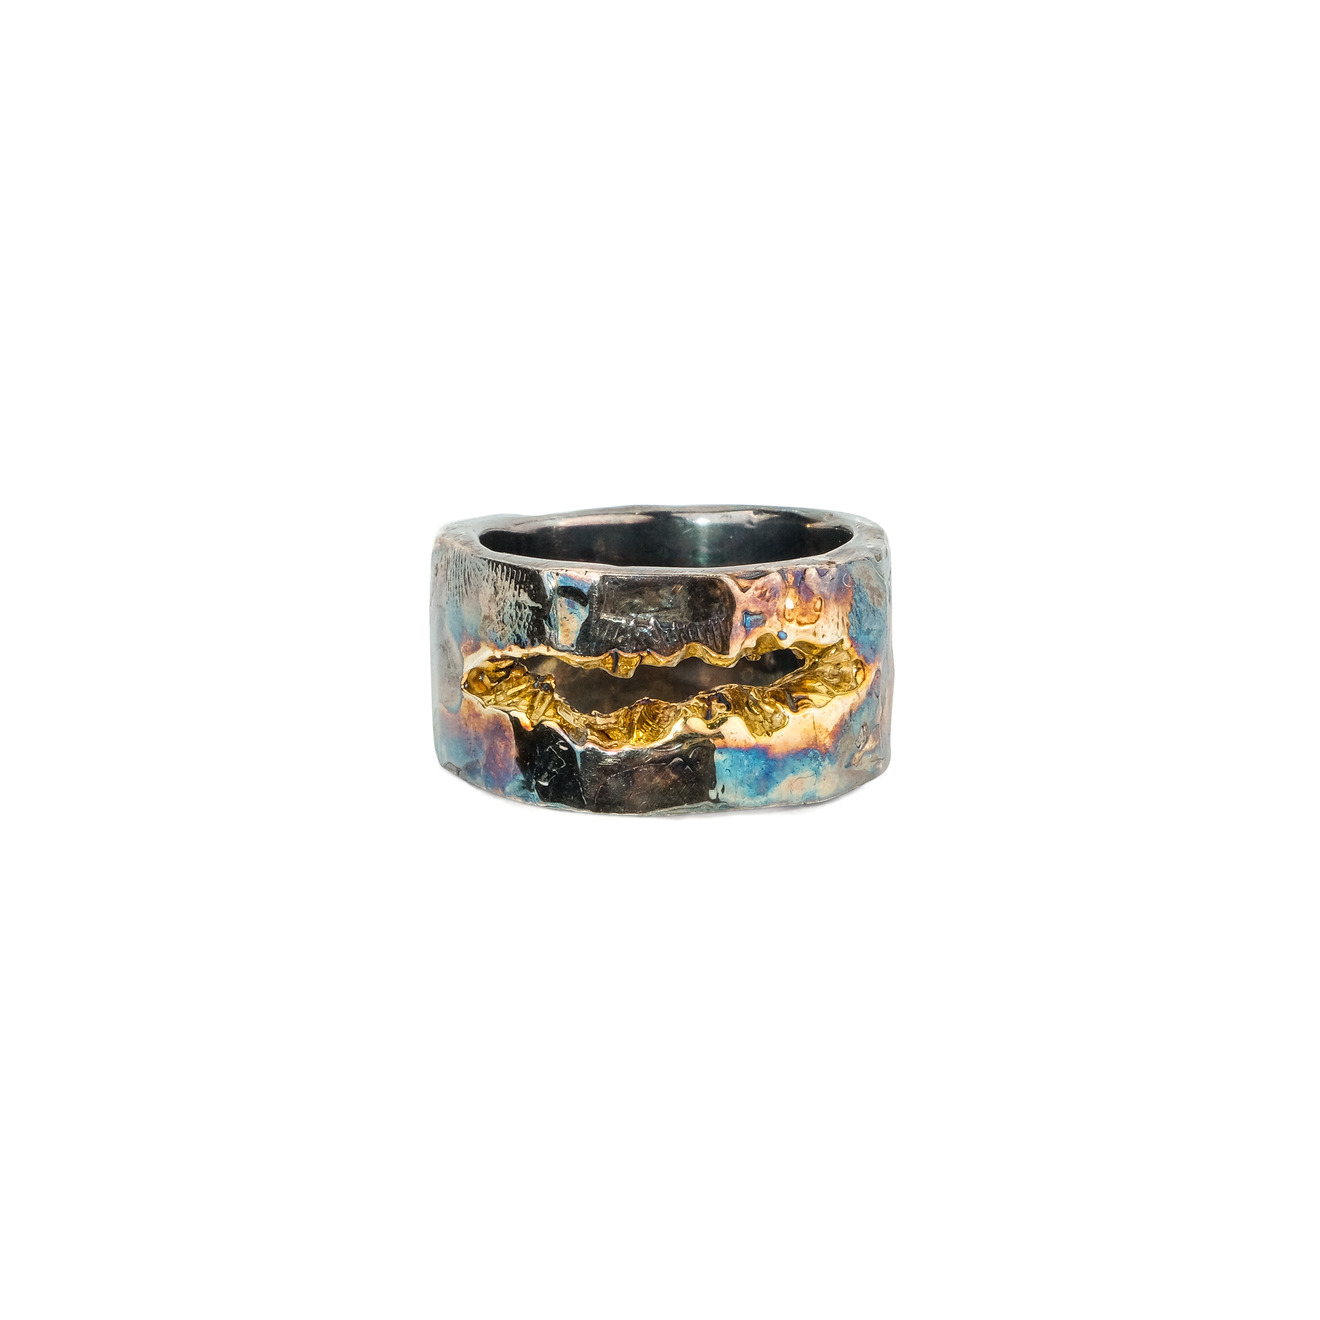 Kintsugi Jewelry Кольцо Forgiveness из серебра с позолотой кольцо с сапфирами и фианитами из серебра с позолотой